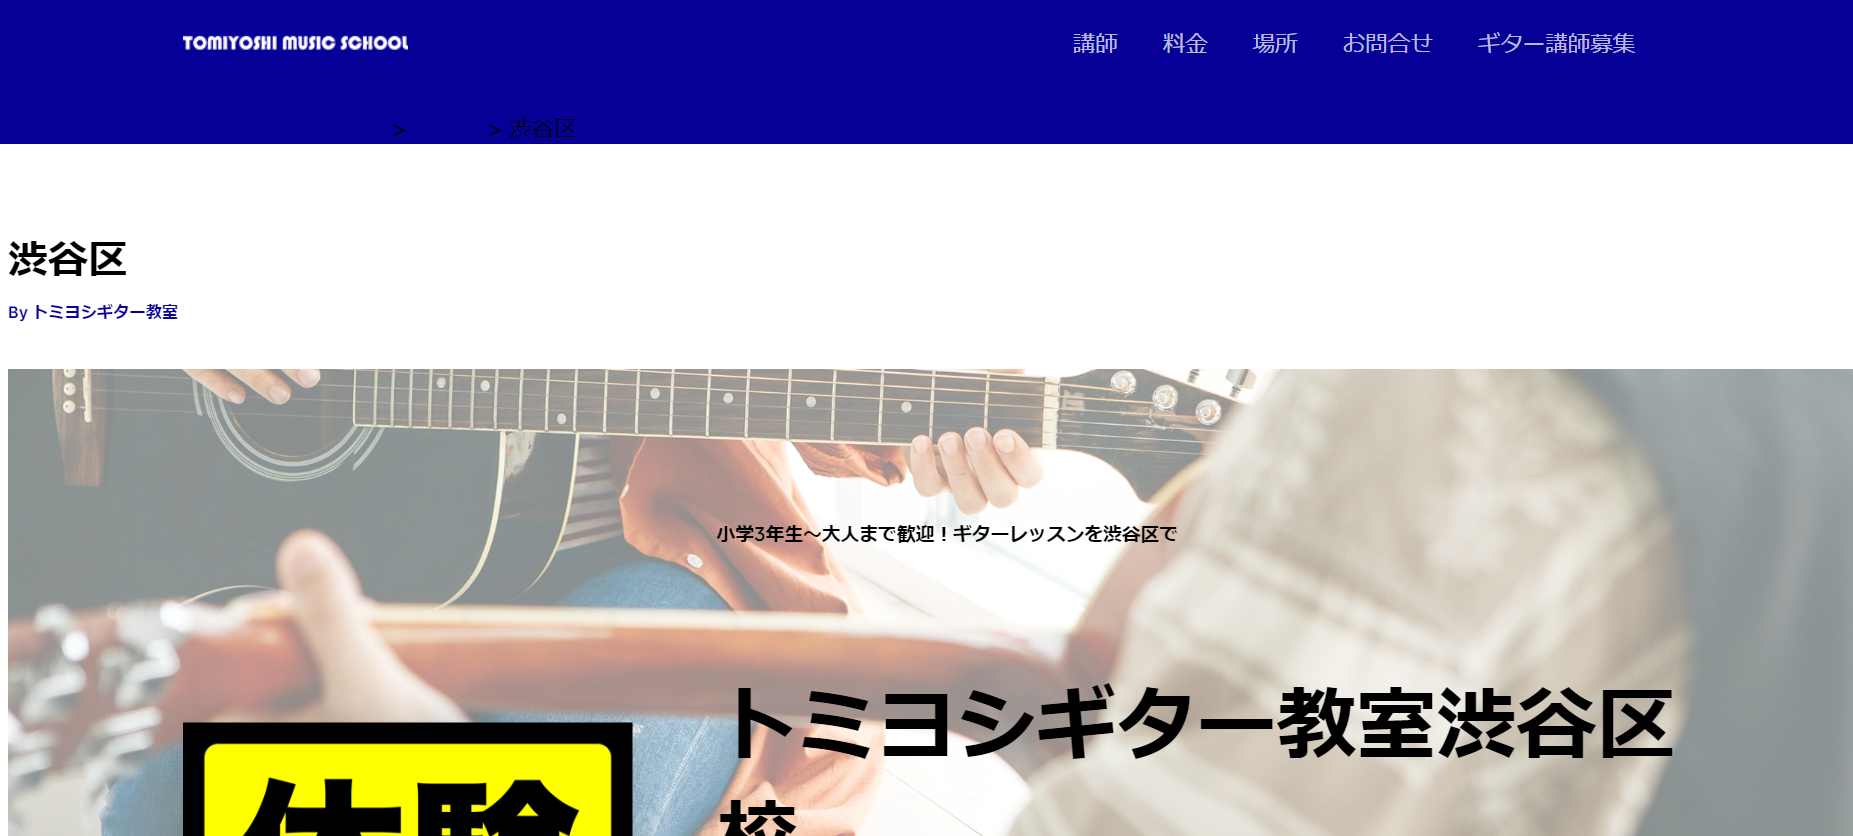 【トミヨシギター教室】渋谷区13か所のスタジオでレッスンできるギター教室